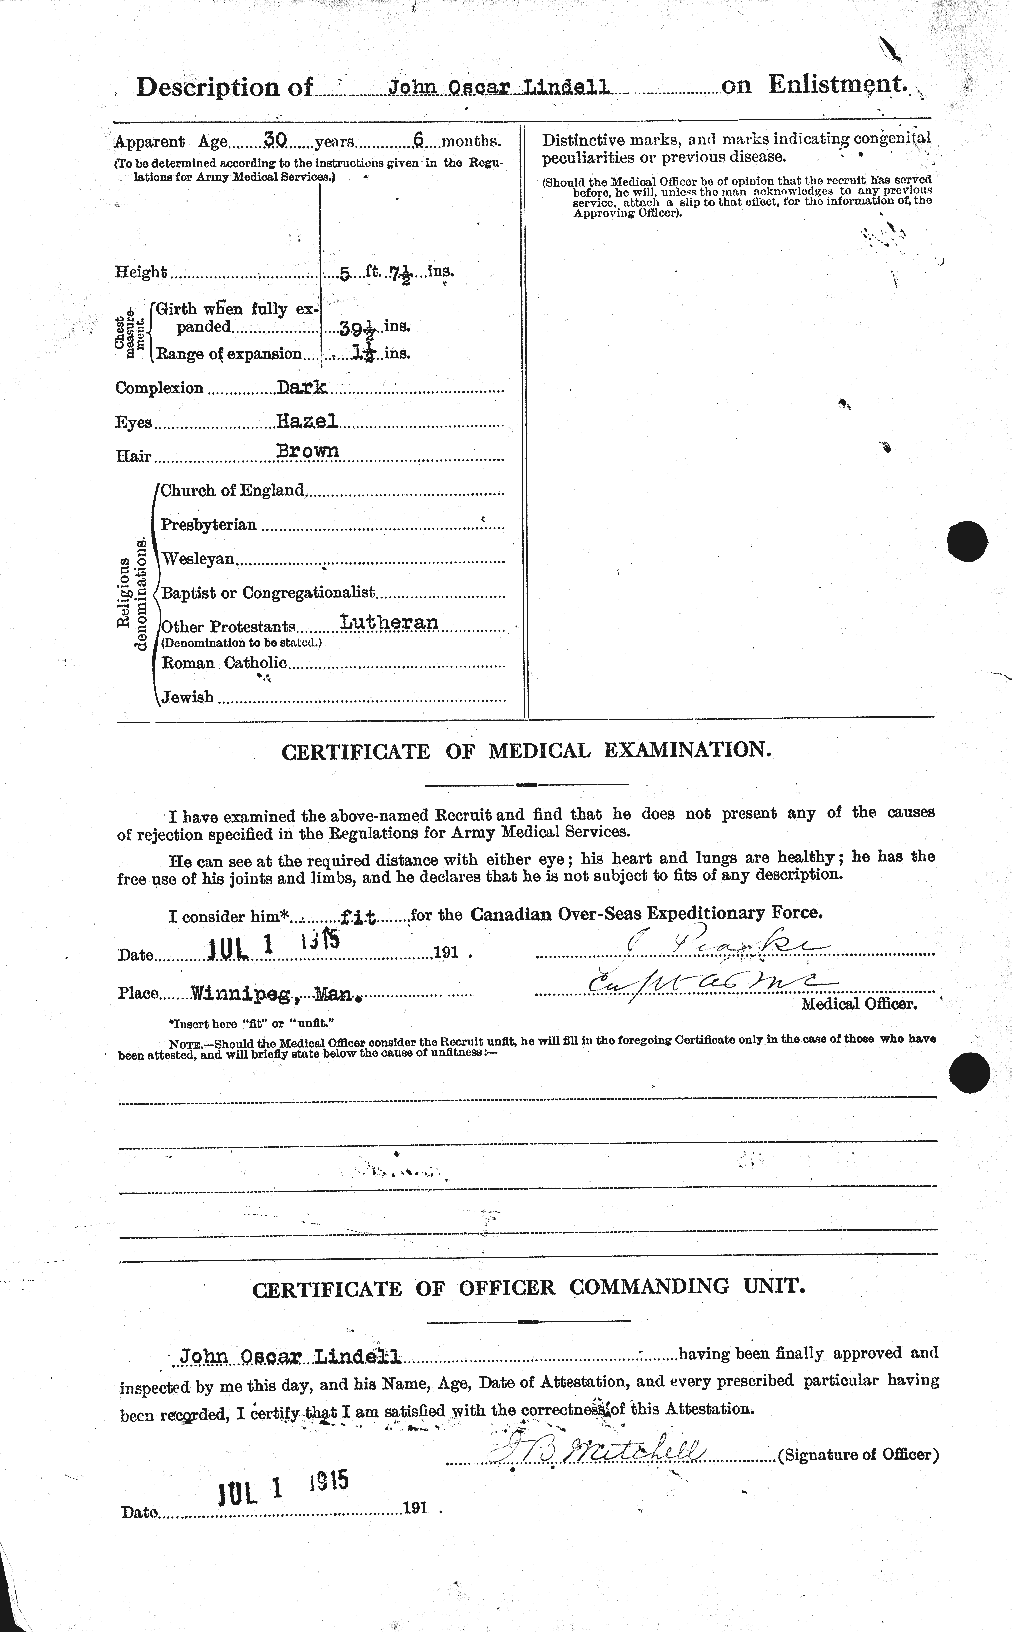 Dossiers du Personnel de la Première Guerre mondiale - CEC 467689b